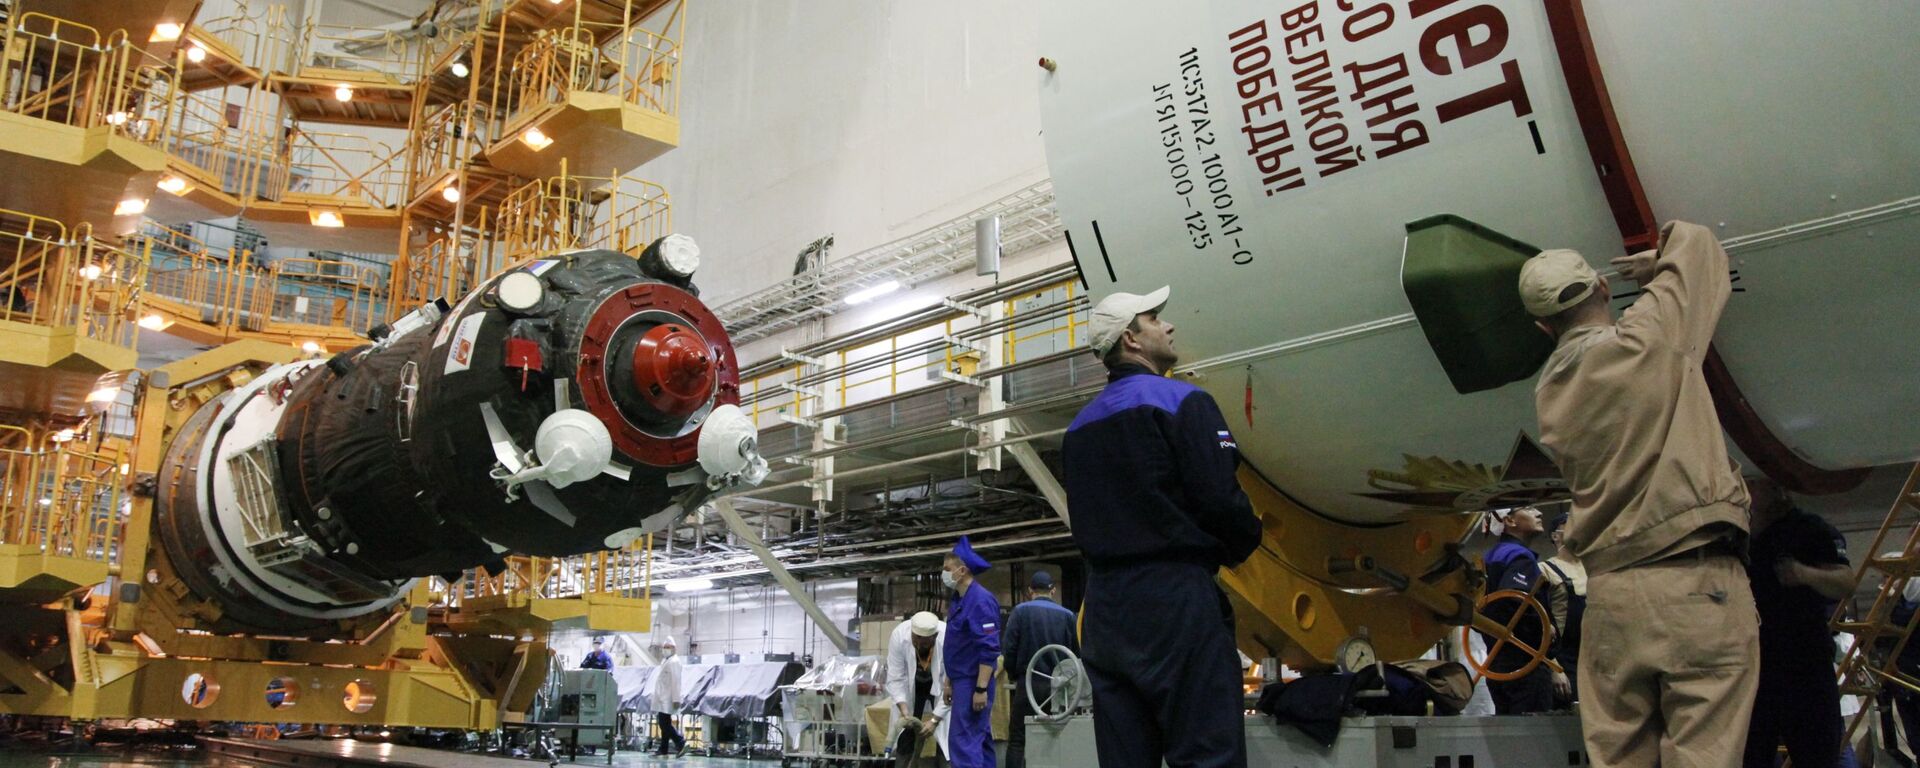  وكالة الفضاء الروسية روس كوسموس تقدم صاروخ حامل جديد يحمل اسم بوبيدا (النصر)، بمناسبة الذكرى الـ75 لعيد النصر في الحرب الوطنية العظمى (1941-1945)  - سبوتنيك عربي, 1920, 12.04.2022